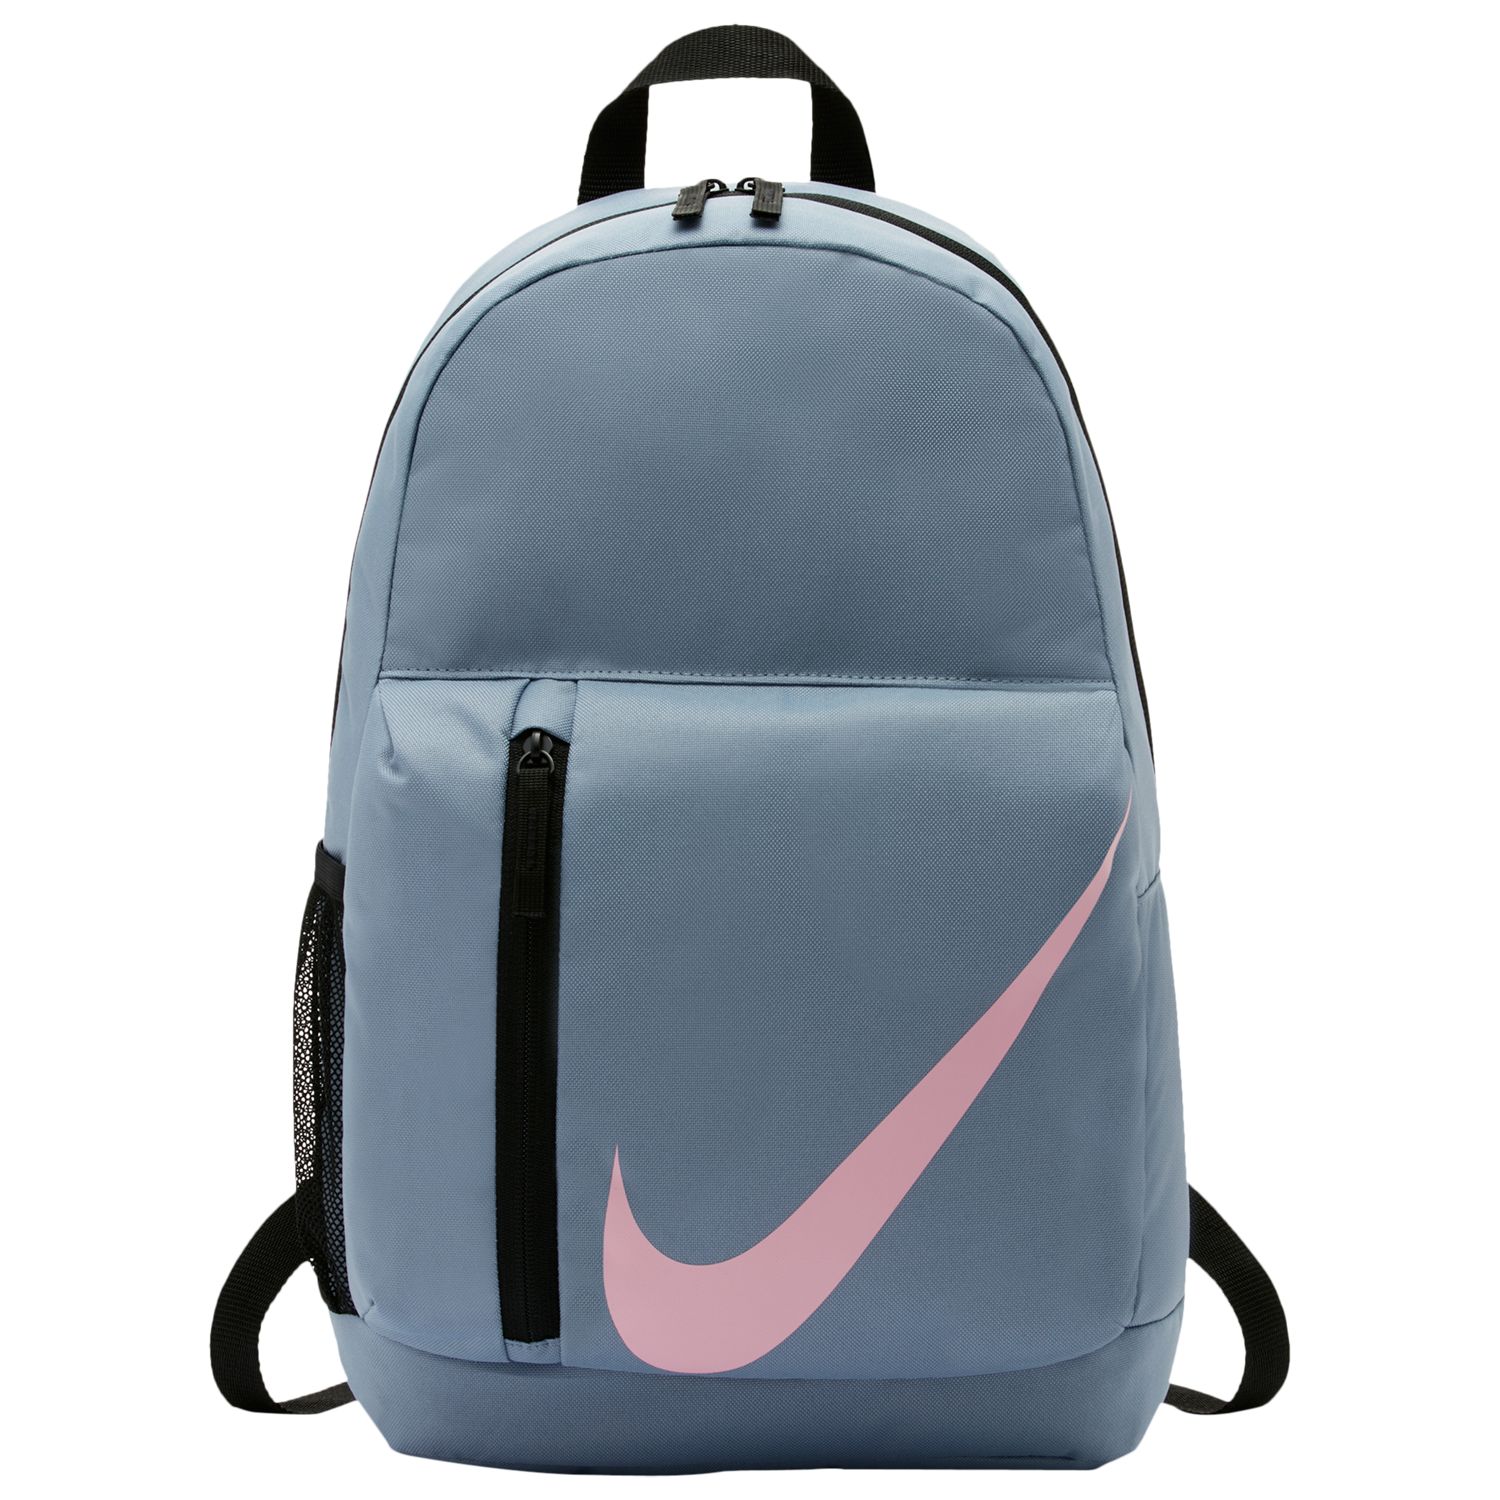 nike girl backpack pink